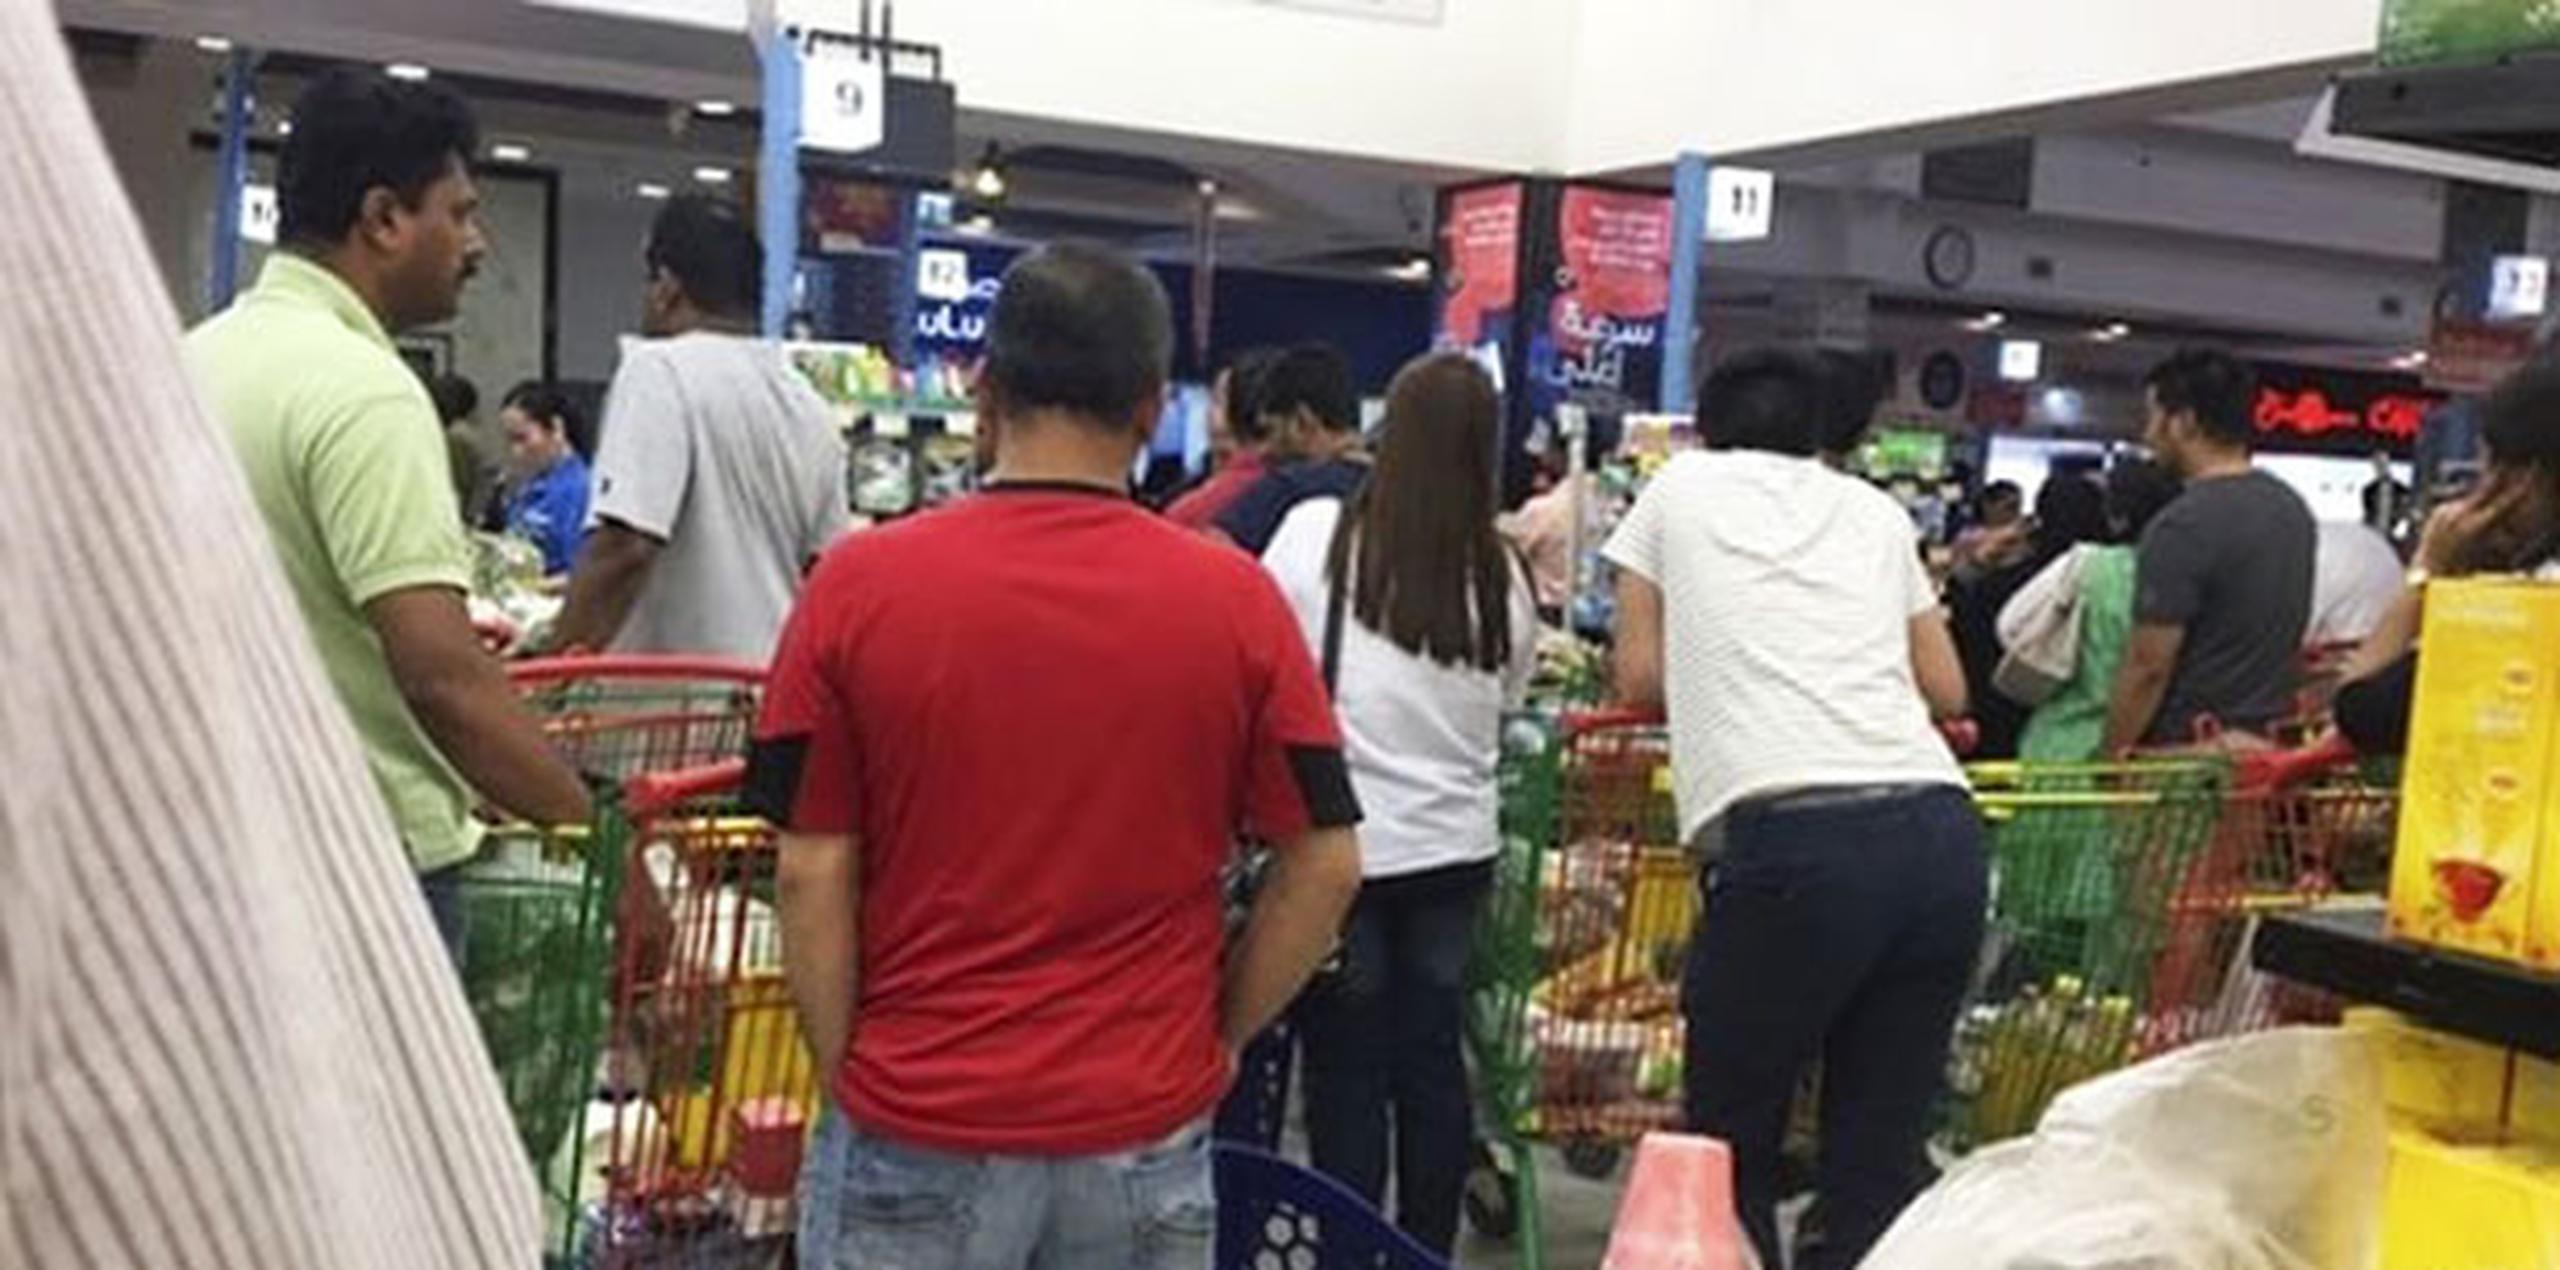 Ocurrieron compras de pánico en los supermercados.(AP)